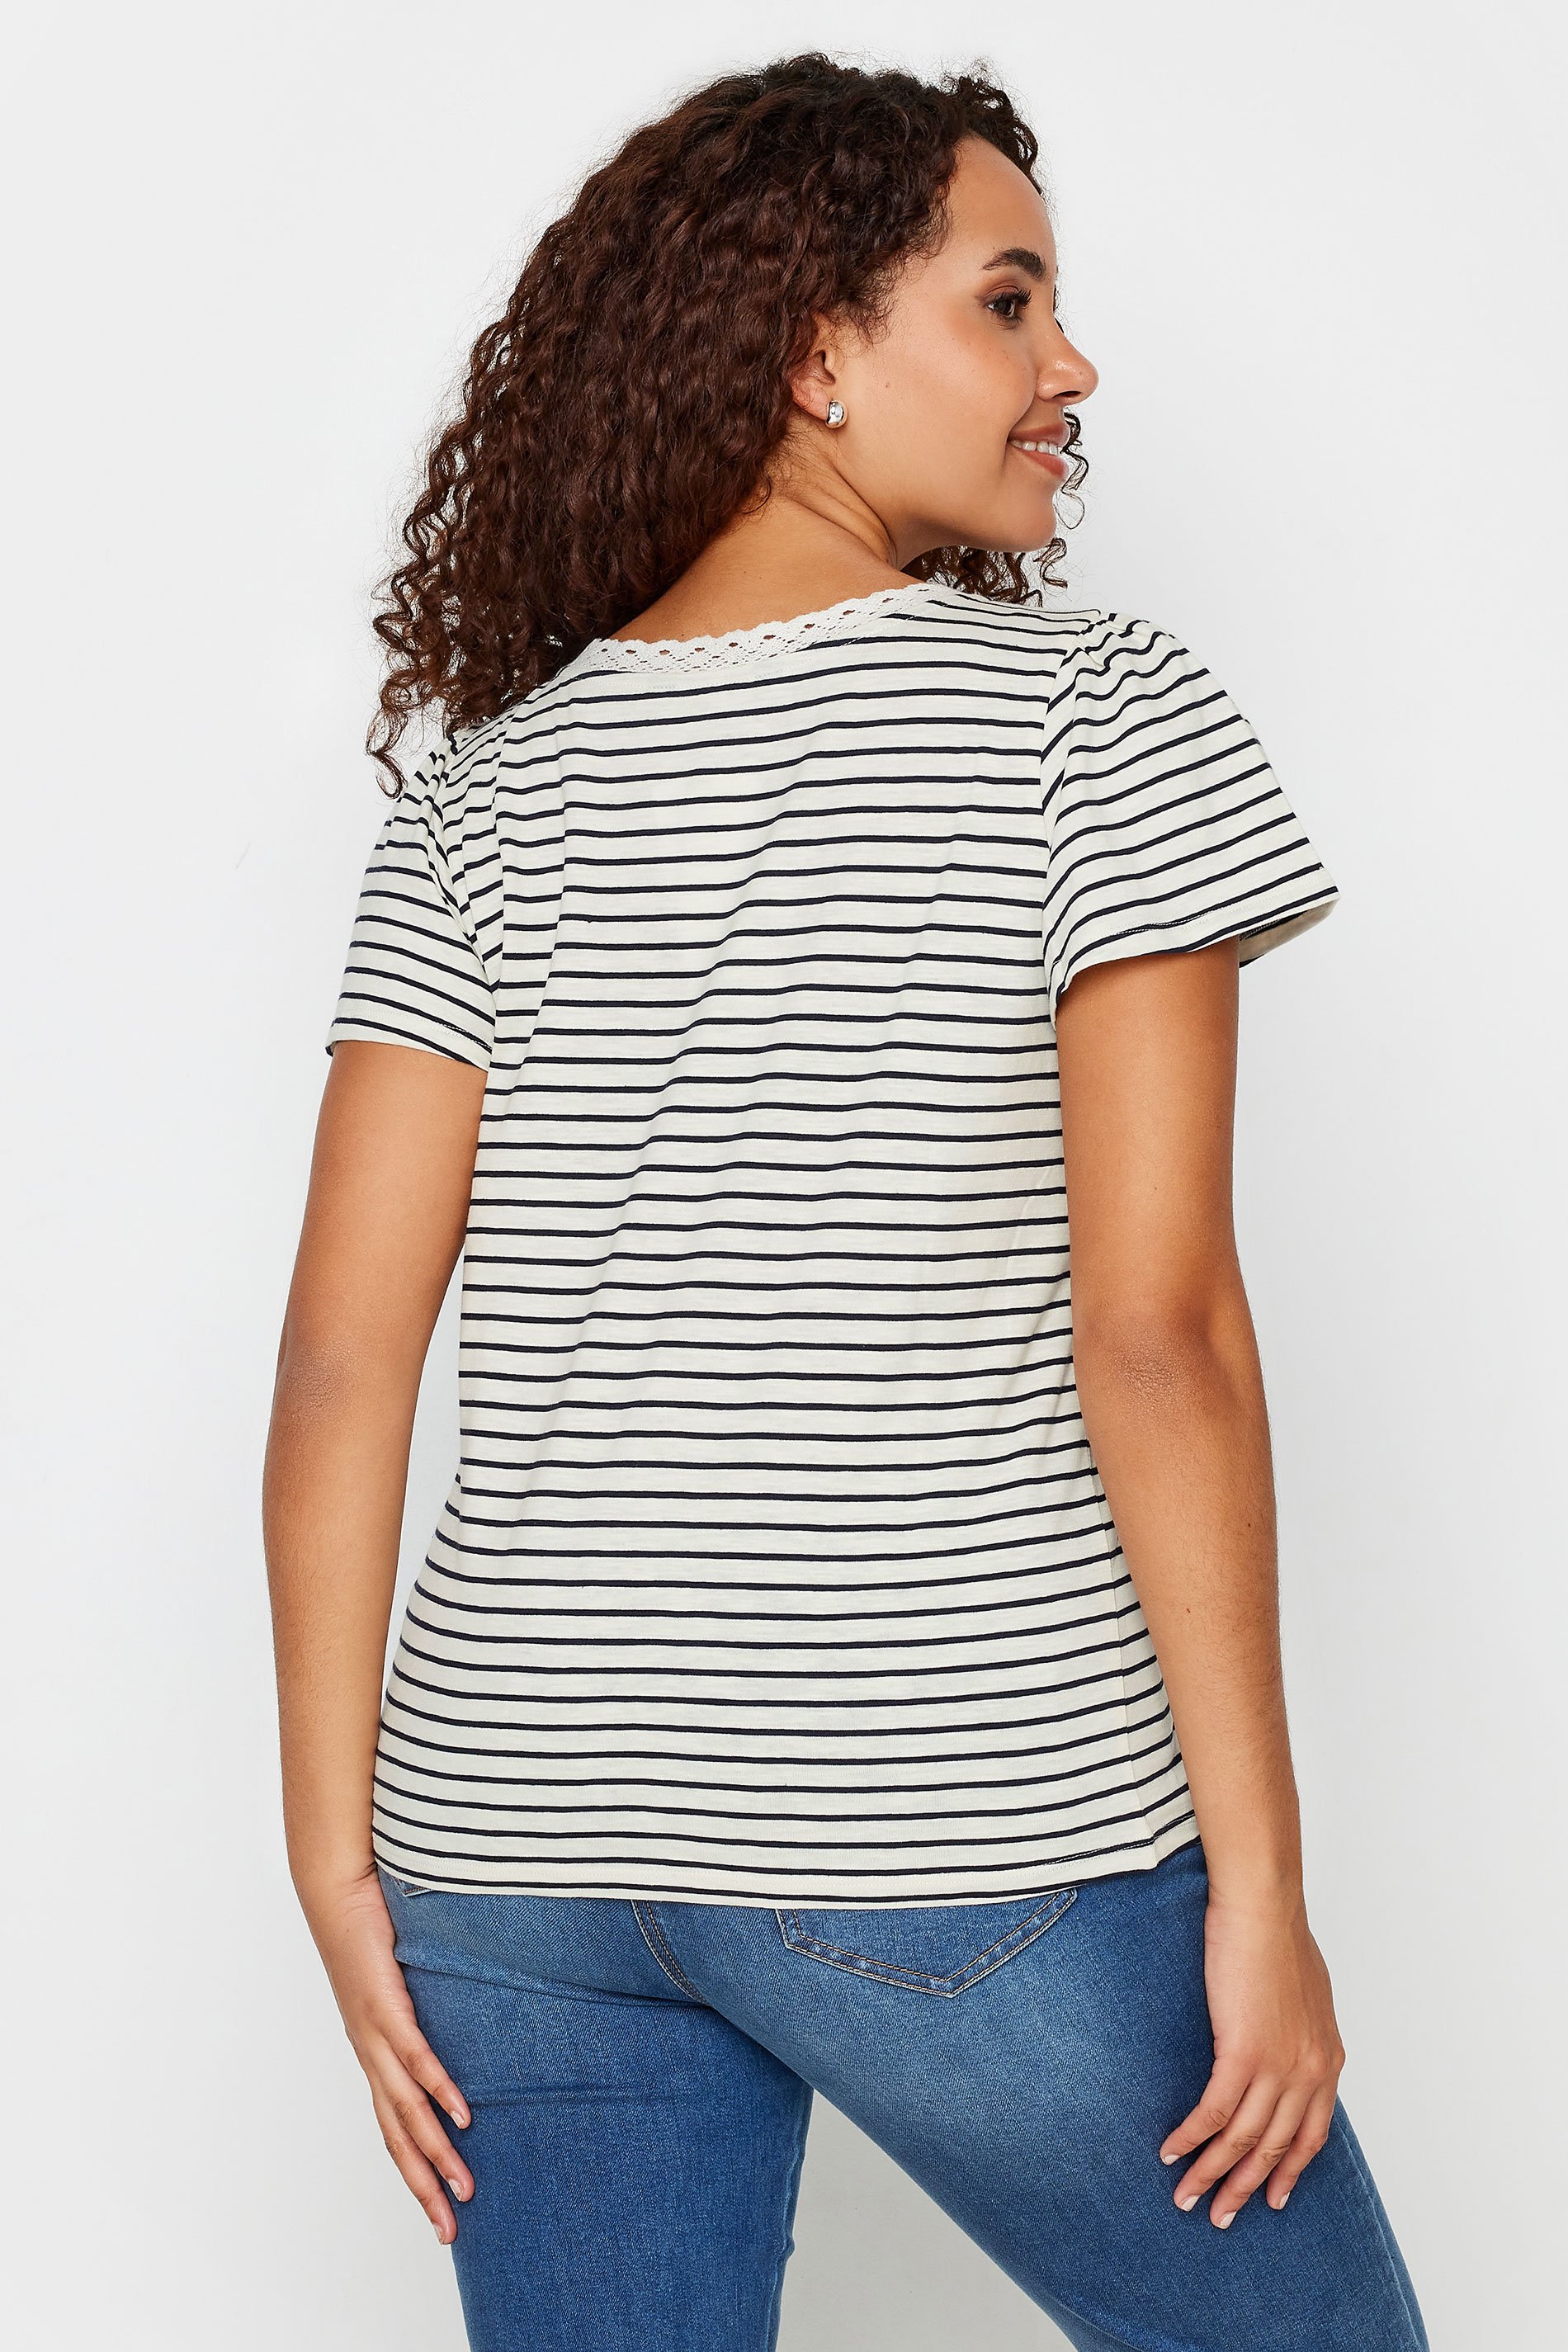 M&Co Black & White Striped Lace Trim T-Shirt | M&Co 3